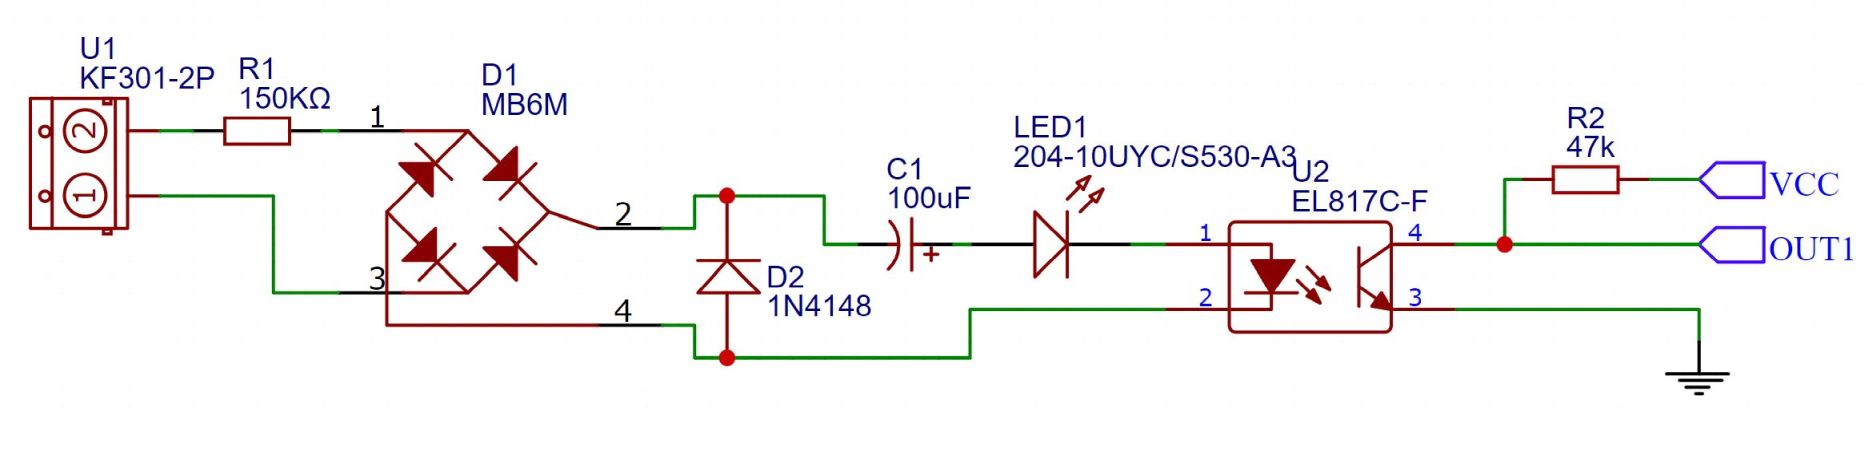 220-230V AC detectie module 1-kanaal met optocoupler schema